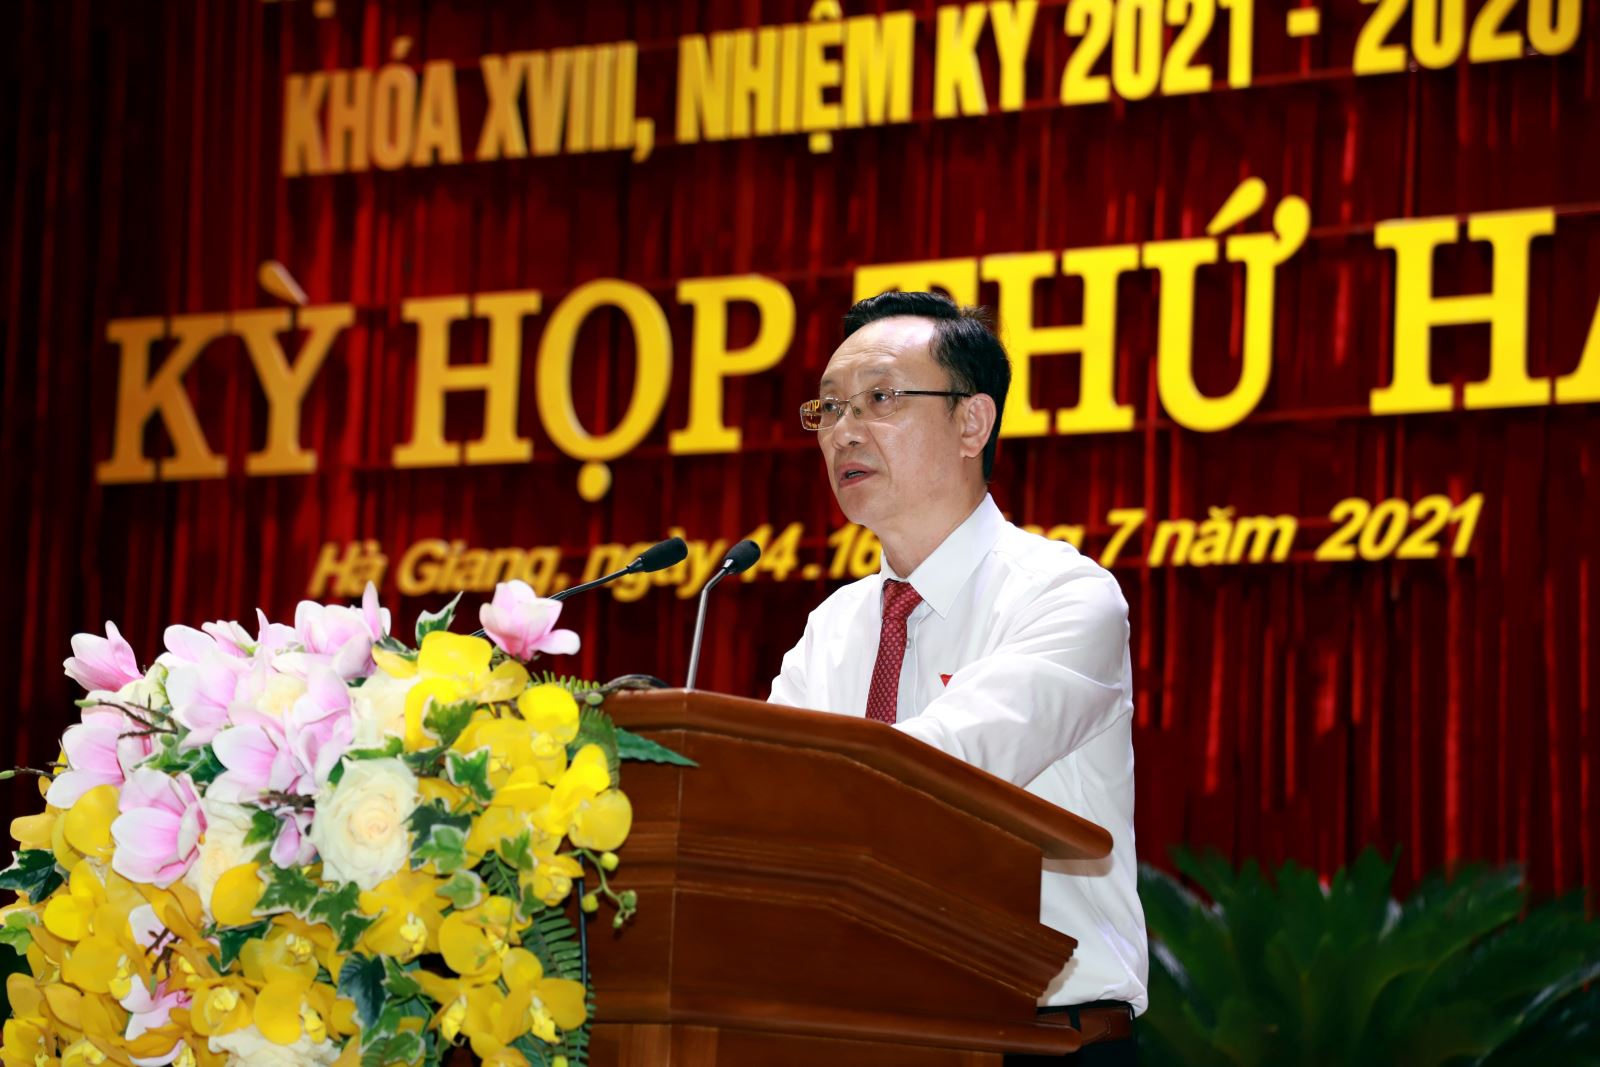 Phó Bí thư Thường trực Tỉnh ủy, Chủ tịch HĐND tỉnh Thào Hồng Sơn phát biểu khai mạc kỳ họp